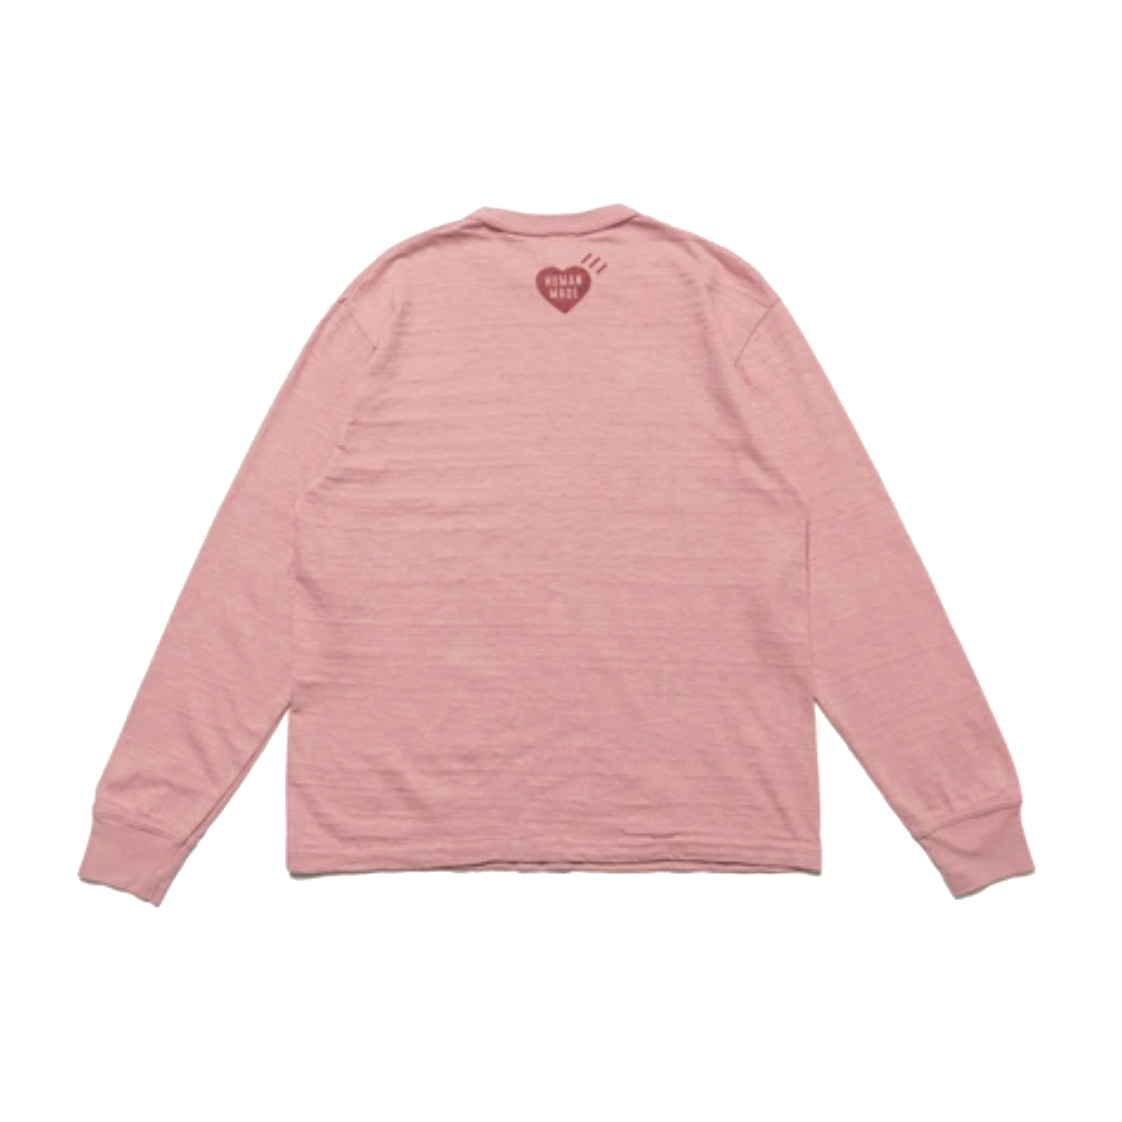 Human Made x Lil Uzi Vert L/S T-shirt Pink Men's - FW21 - GB